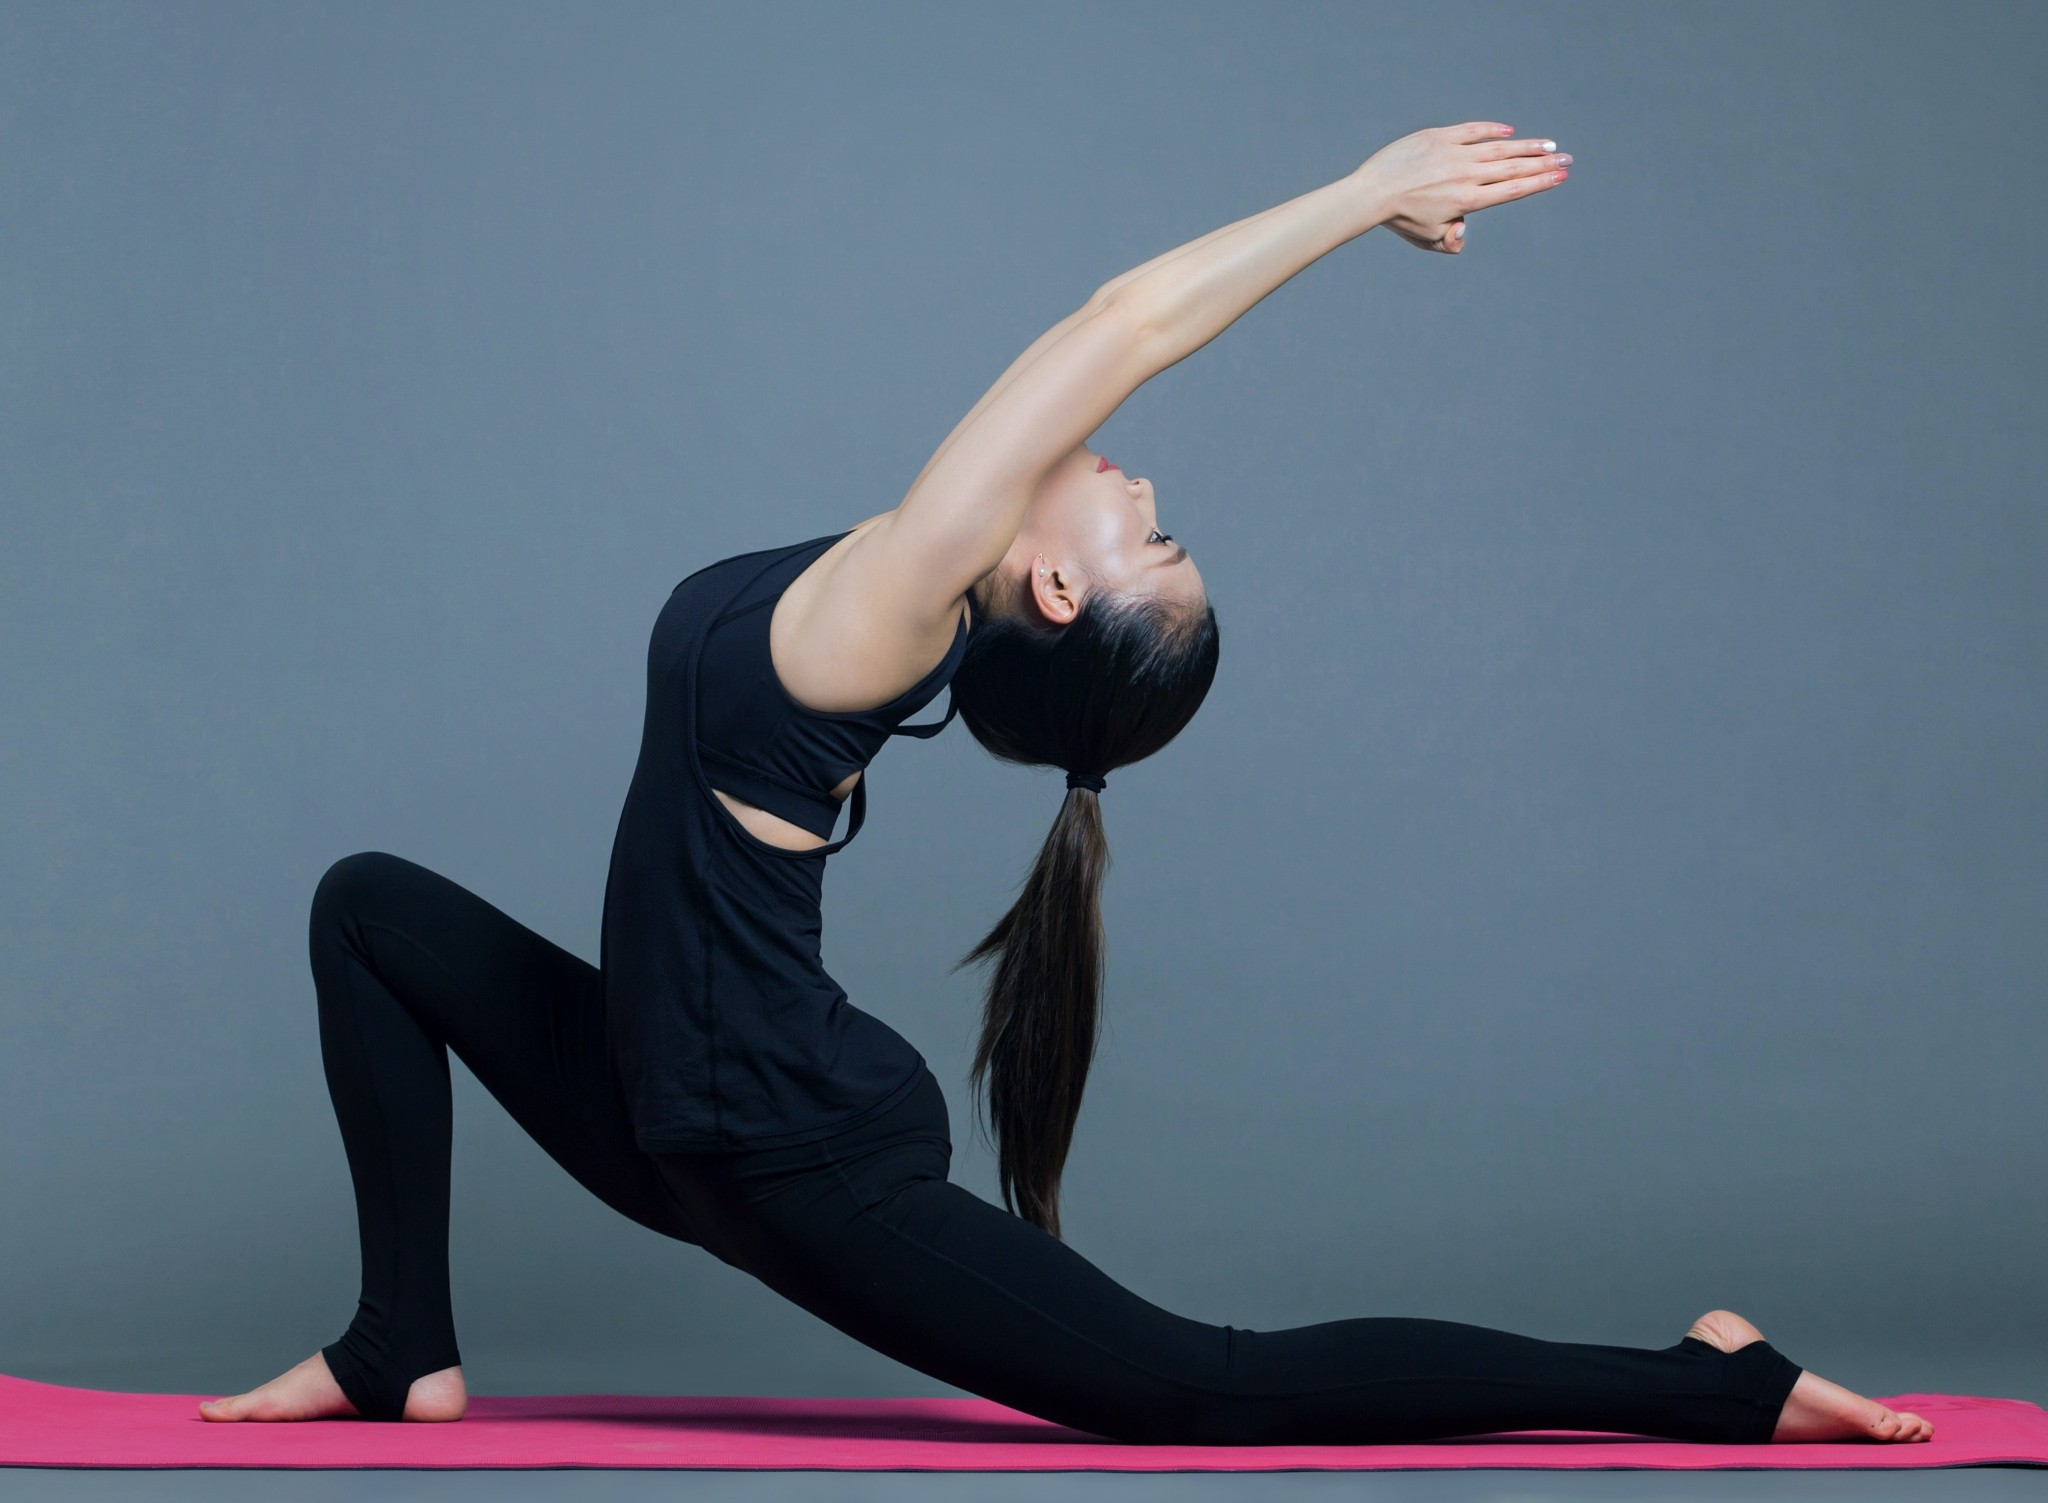 Kάτι τρέχει με τη Yoga, που αποκτά φανατικό κοινό τώρα και σε άνδρες. Διαλογισμός, γυμναστική ή και τα δύο;